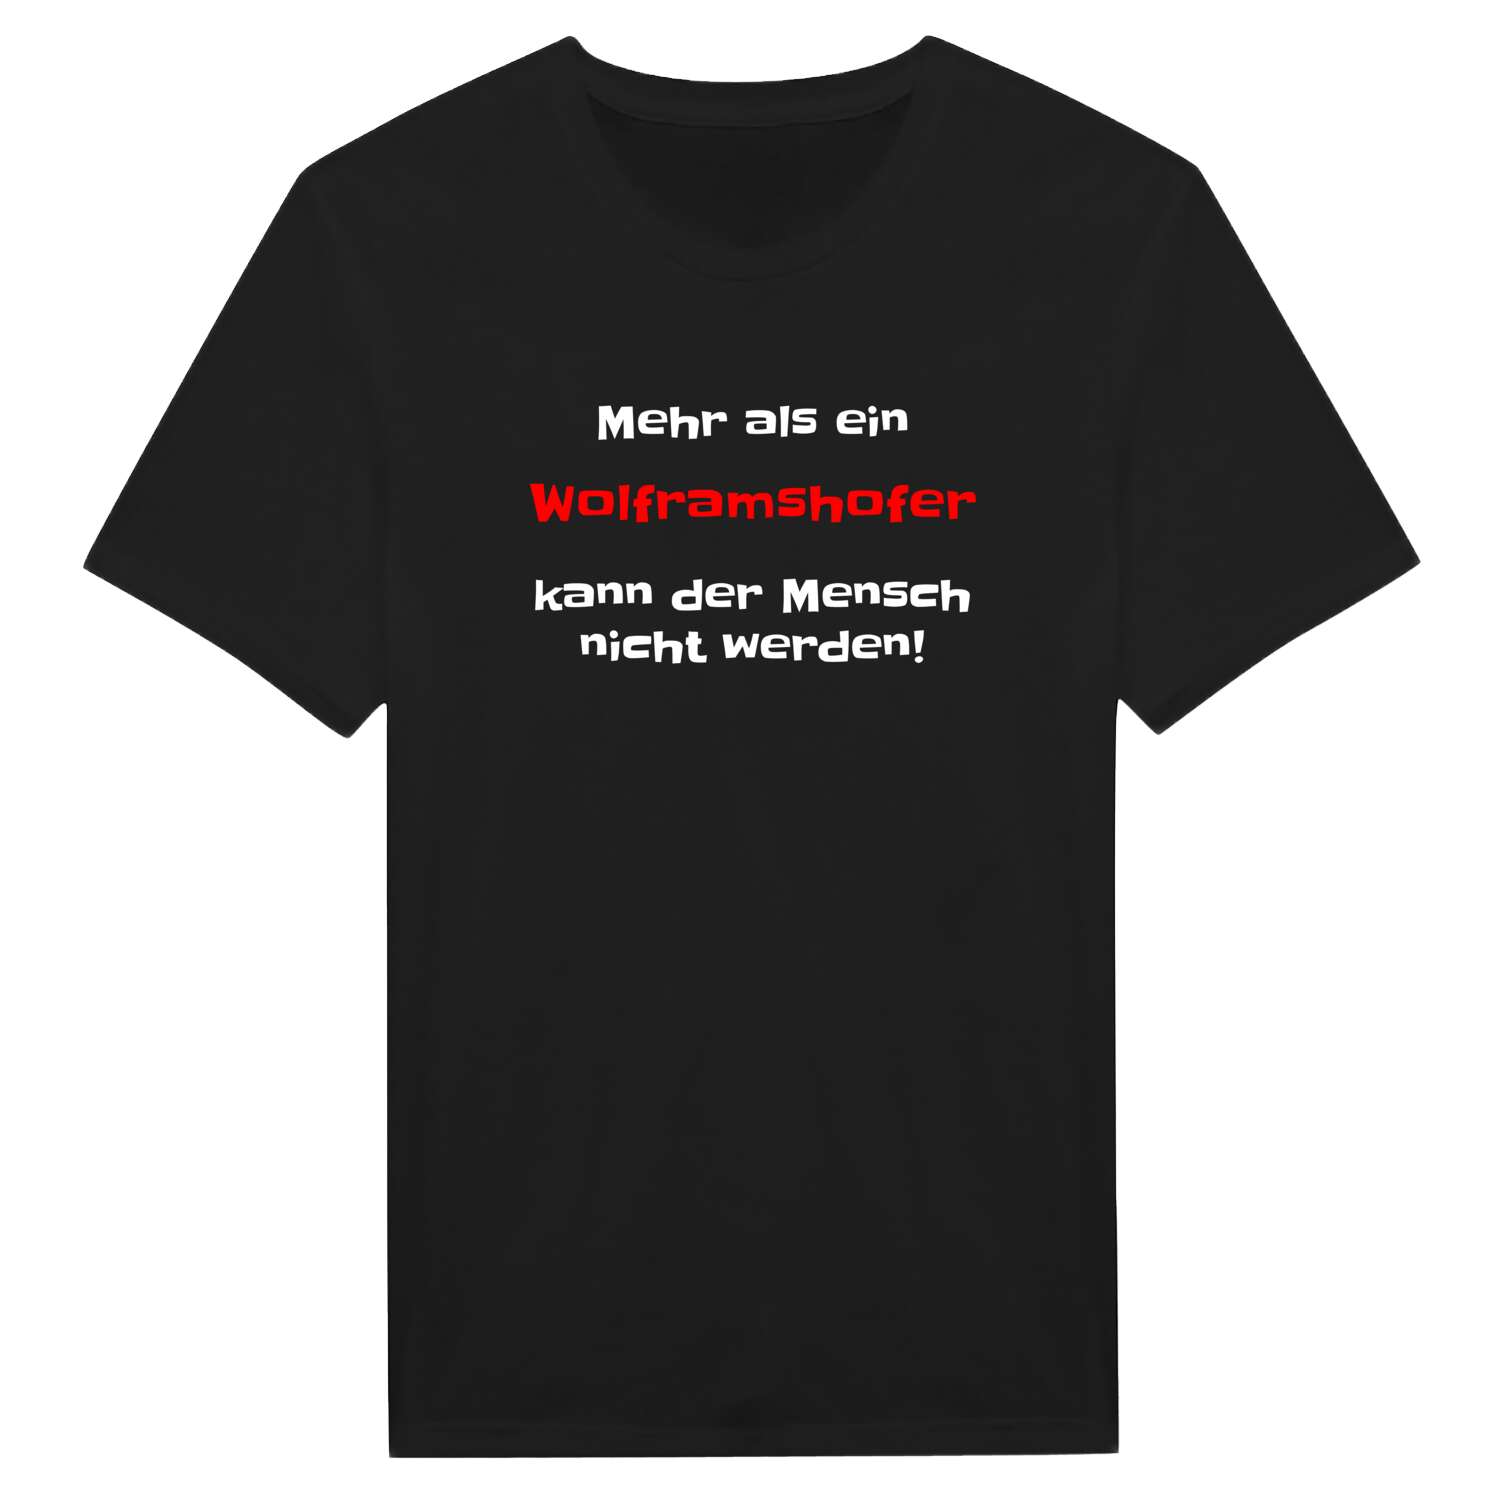 Wolframshof T-Shirt »Mehr als ein«